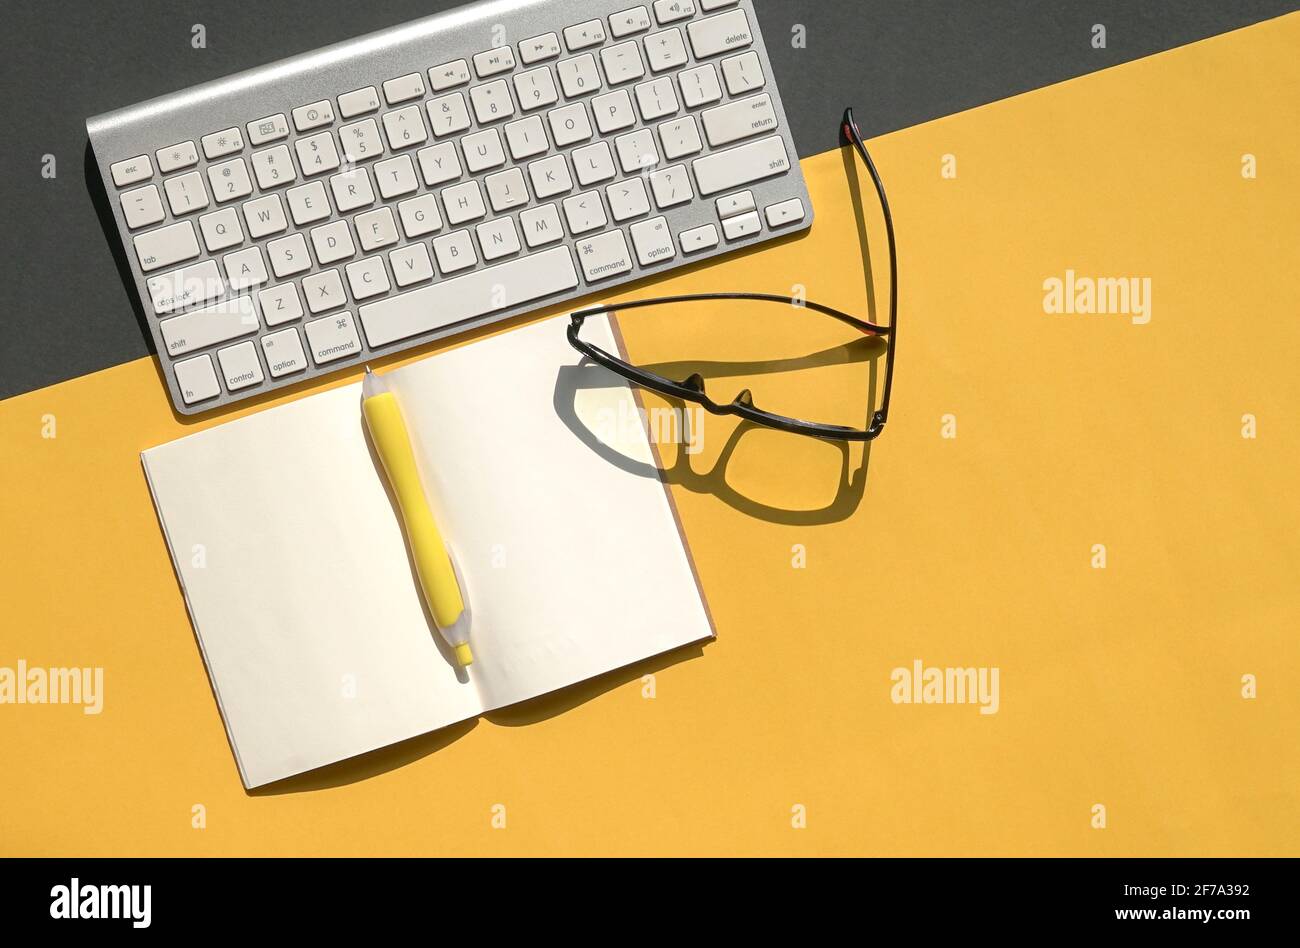 Tastiera wireless, occhiali da lettura e blocco note aperto su sfondo nero e giallo. Spazio di copia. Foto Stock